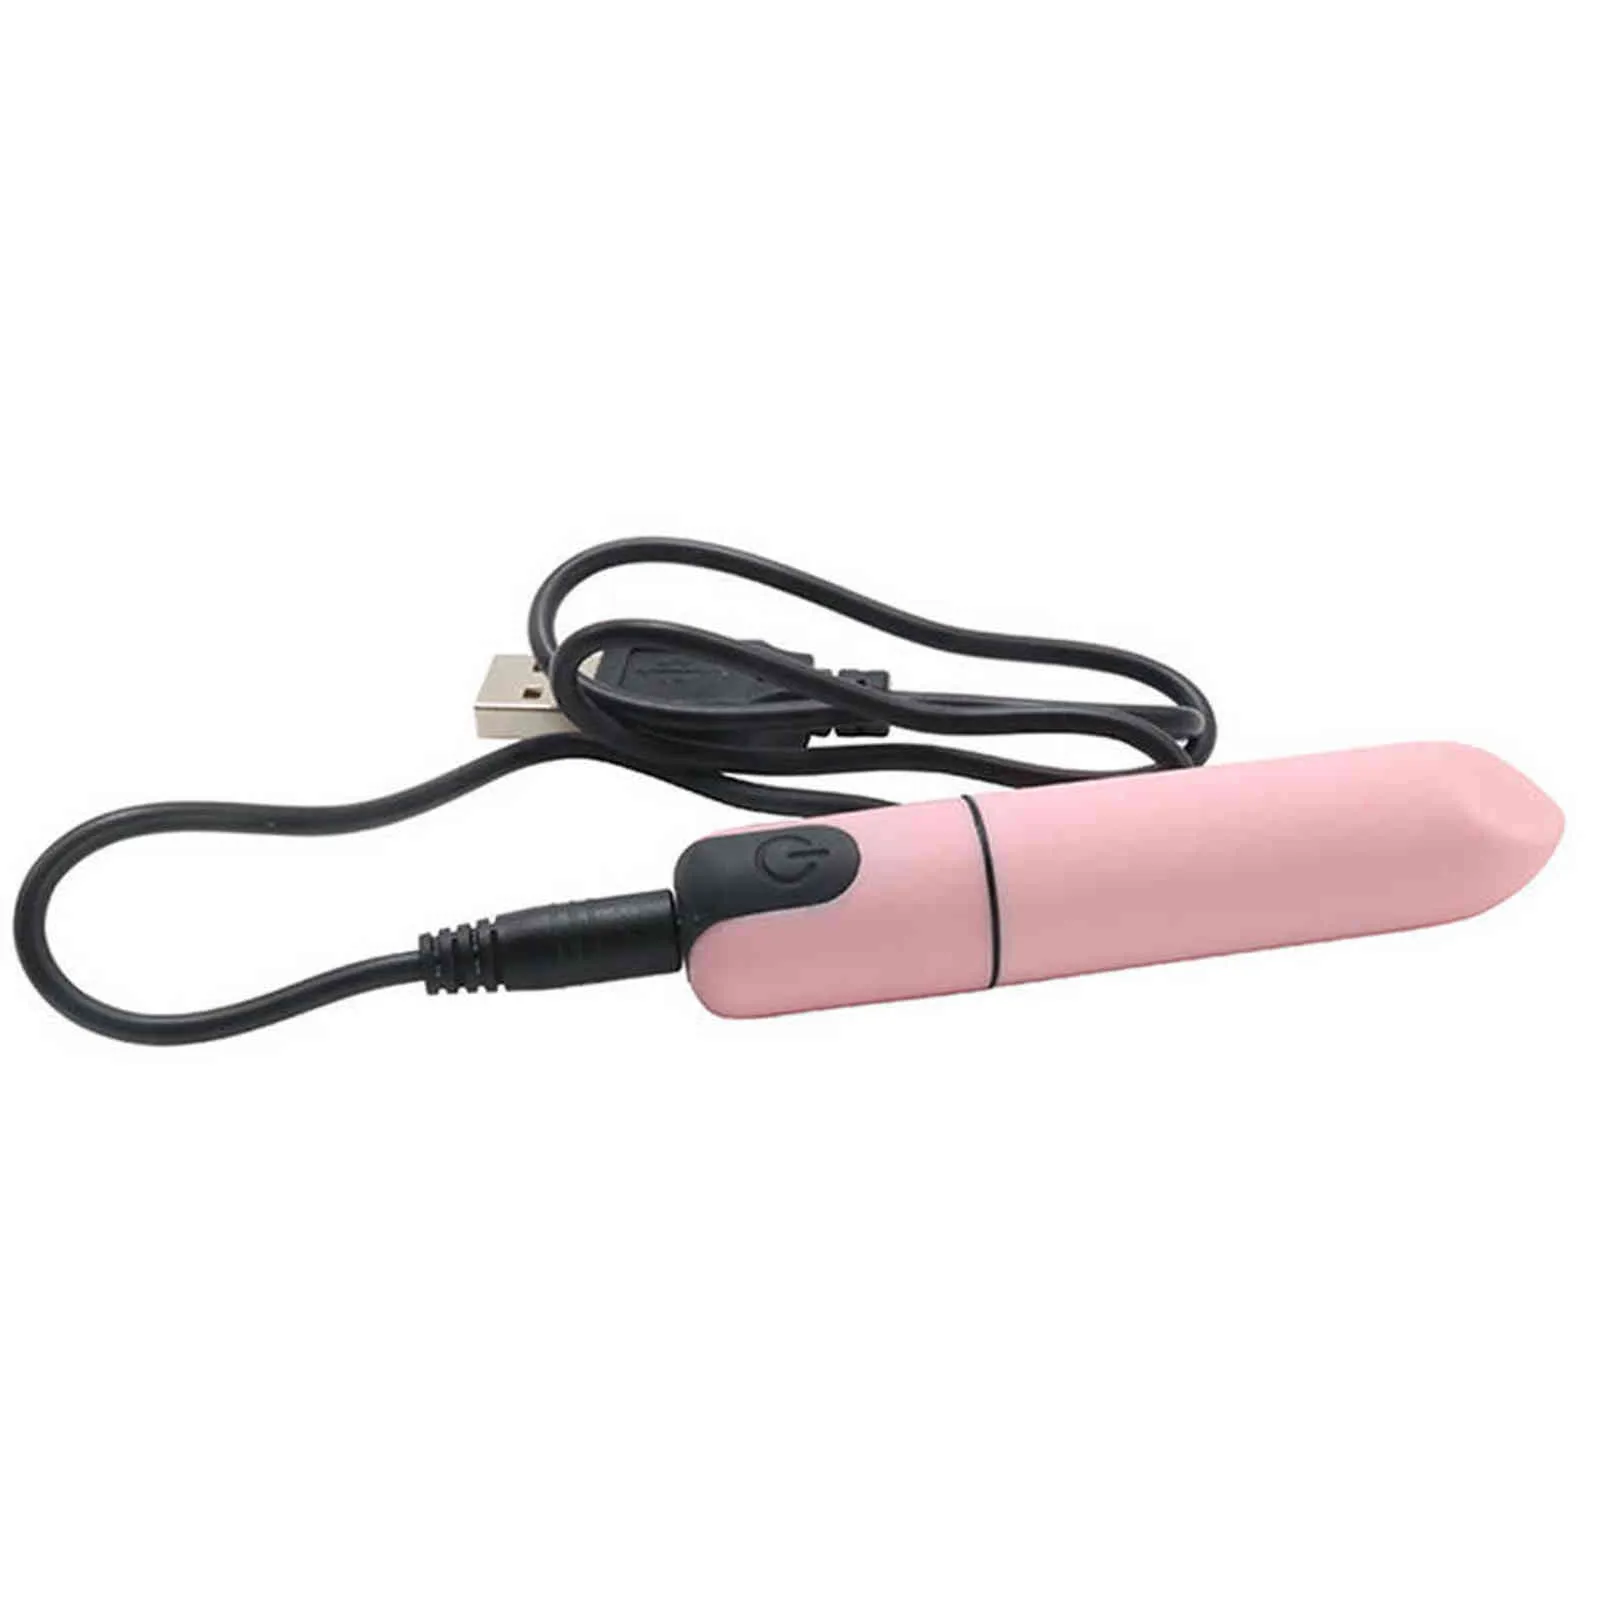 NXY jouets pour adultes charge sans fil conversion de fréquence rouge à lèvres oeuf sautant balle vibrateur bâton de massage jouets sexuels pour adultes pour femmes 1130